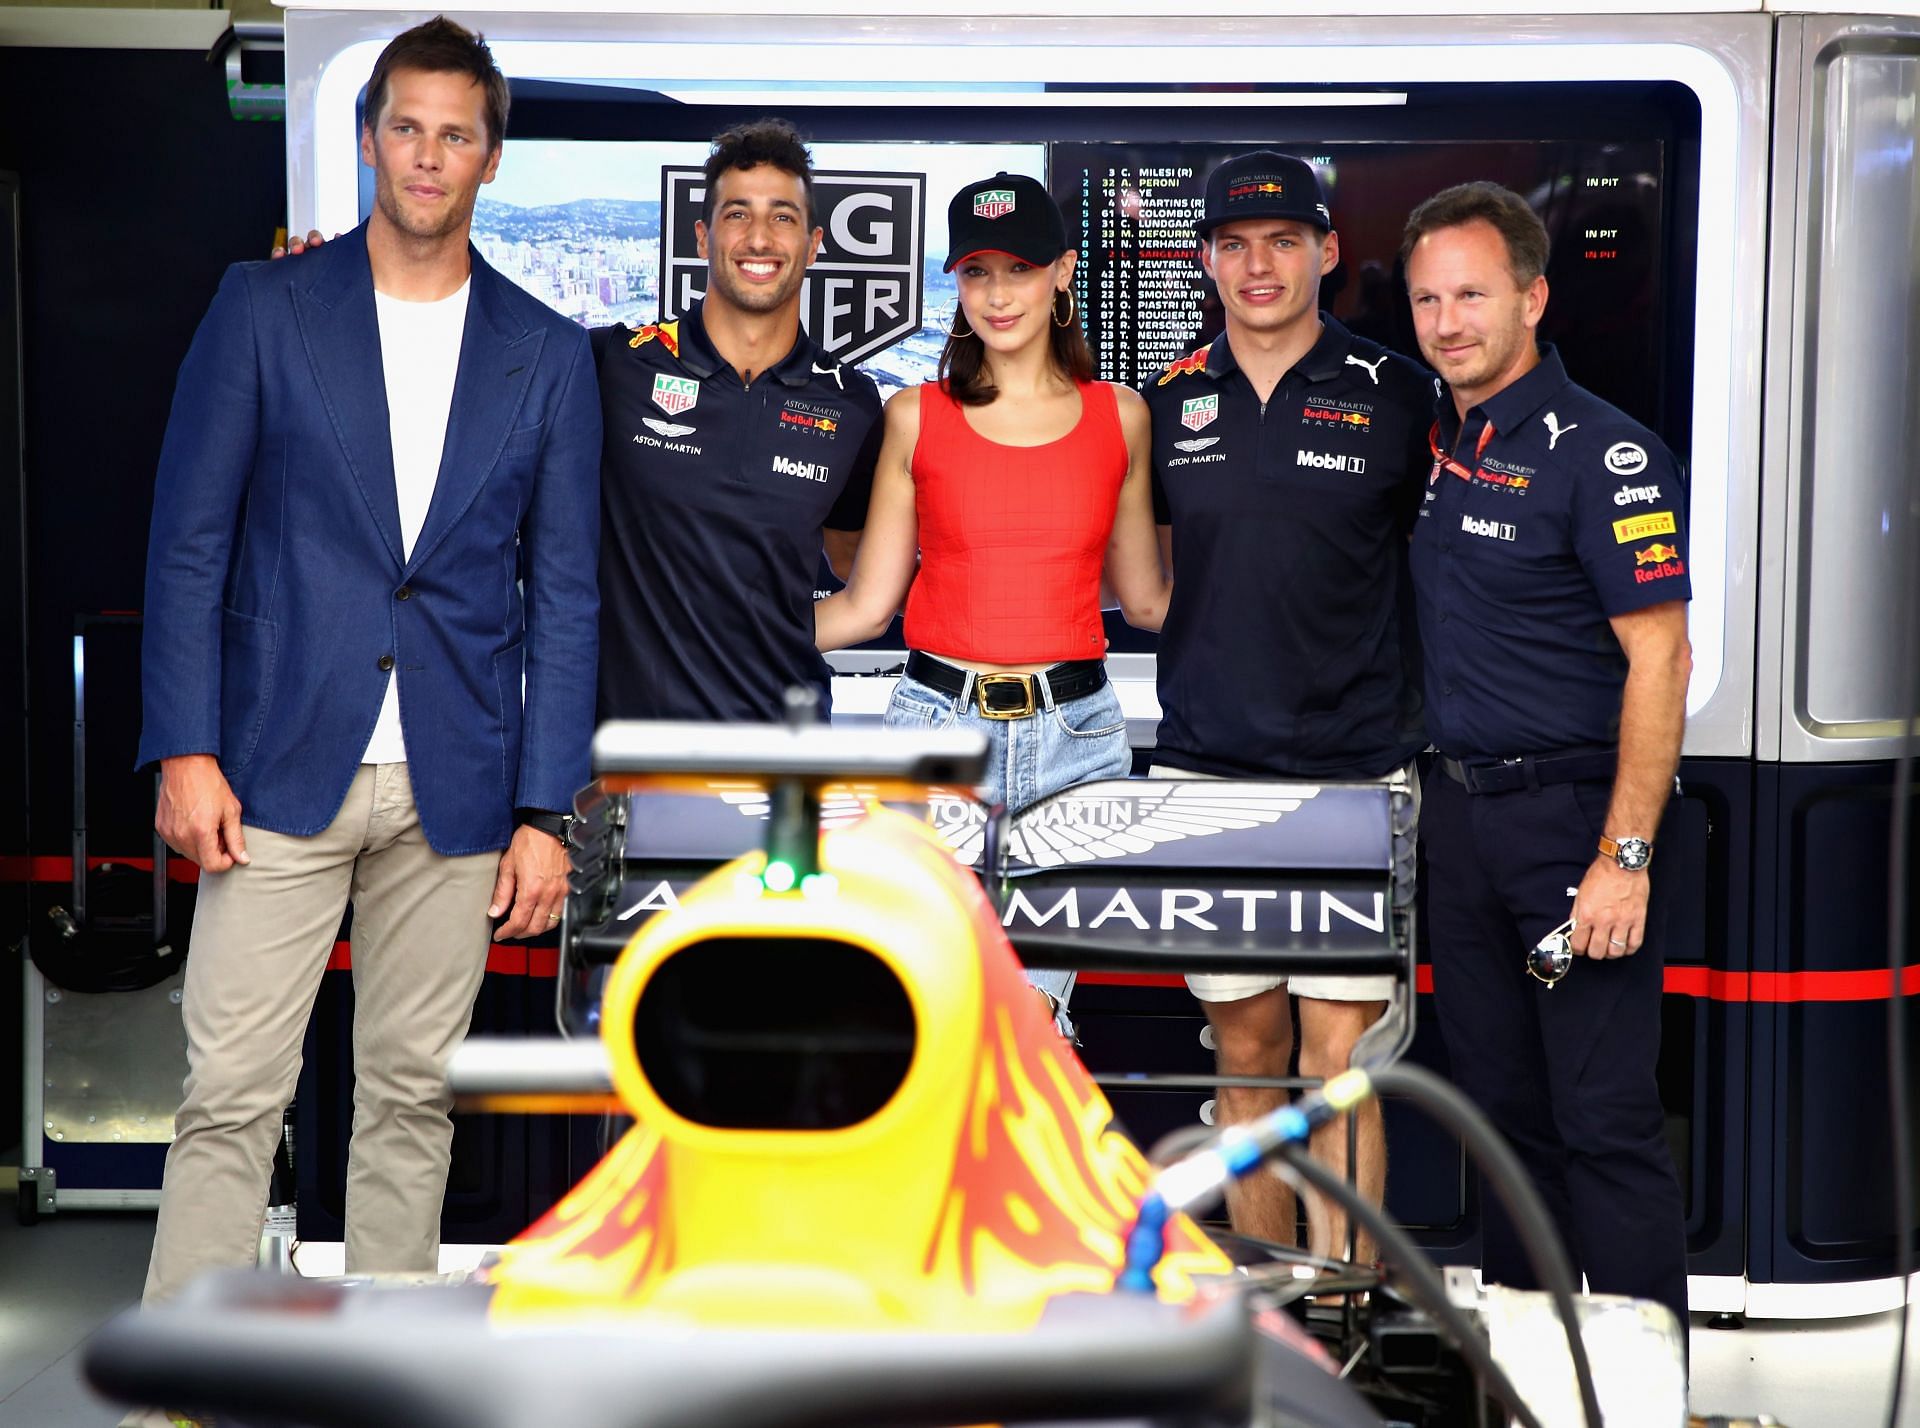 Tom Brady and Daniel Ricciardo at the F1 Grand Prix of Monaco